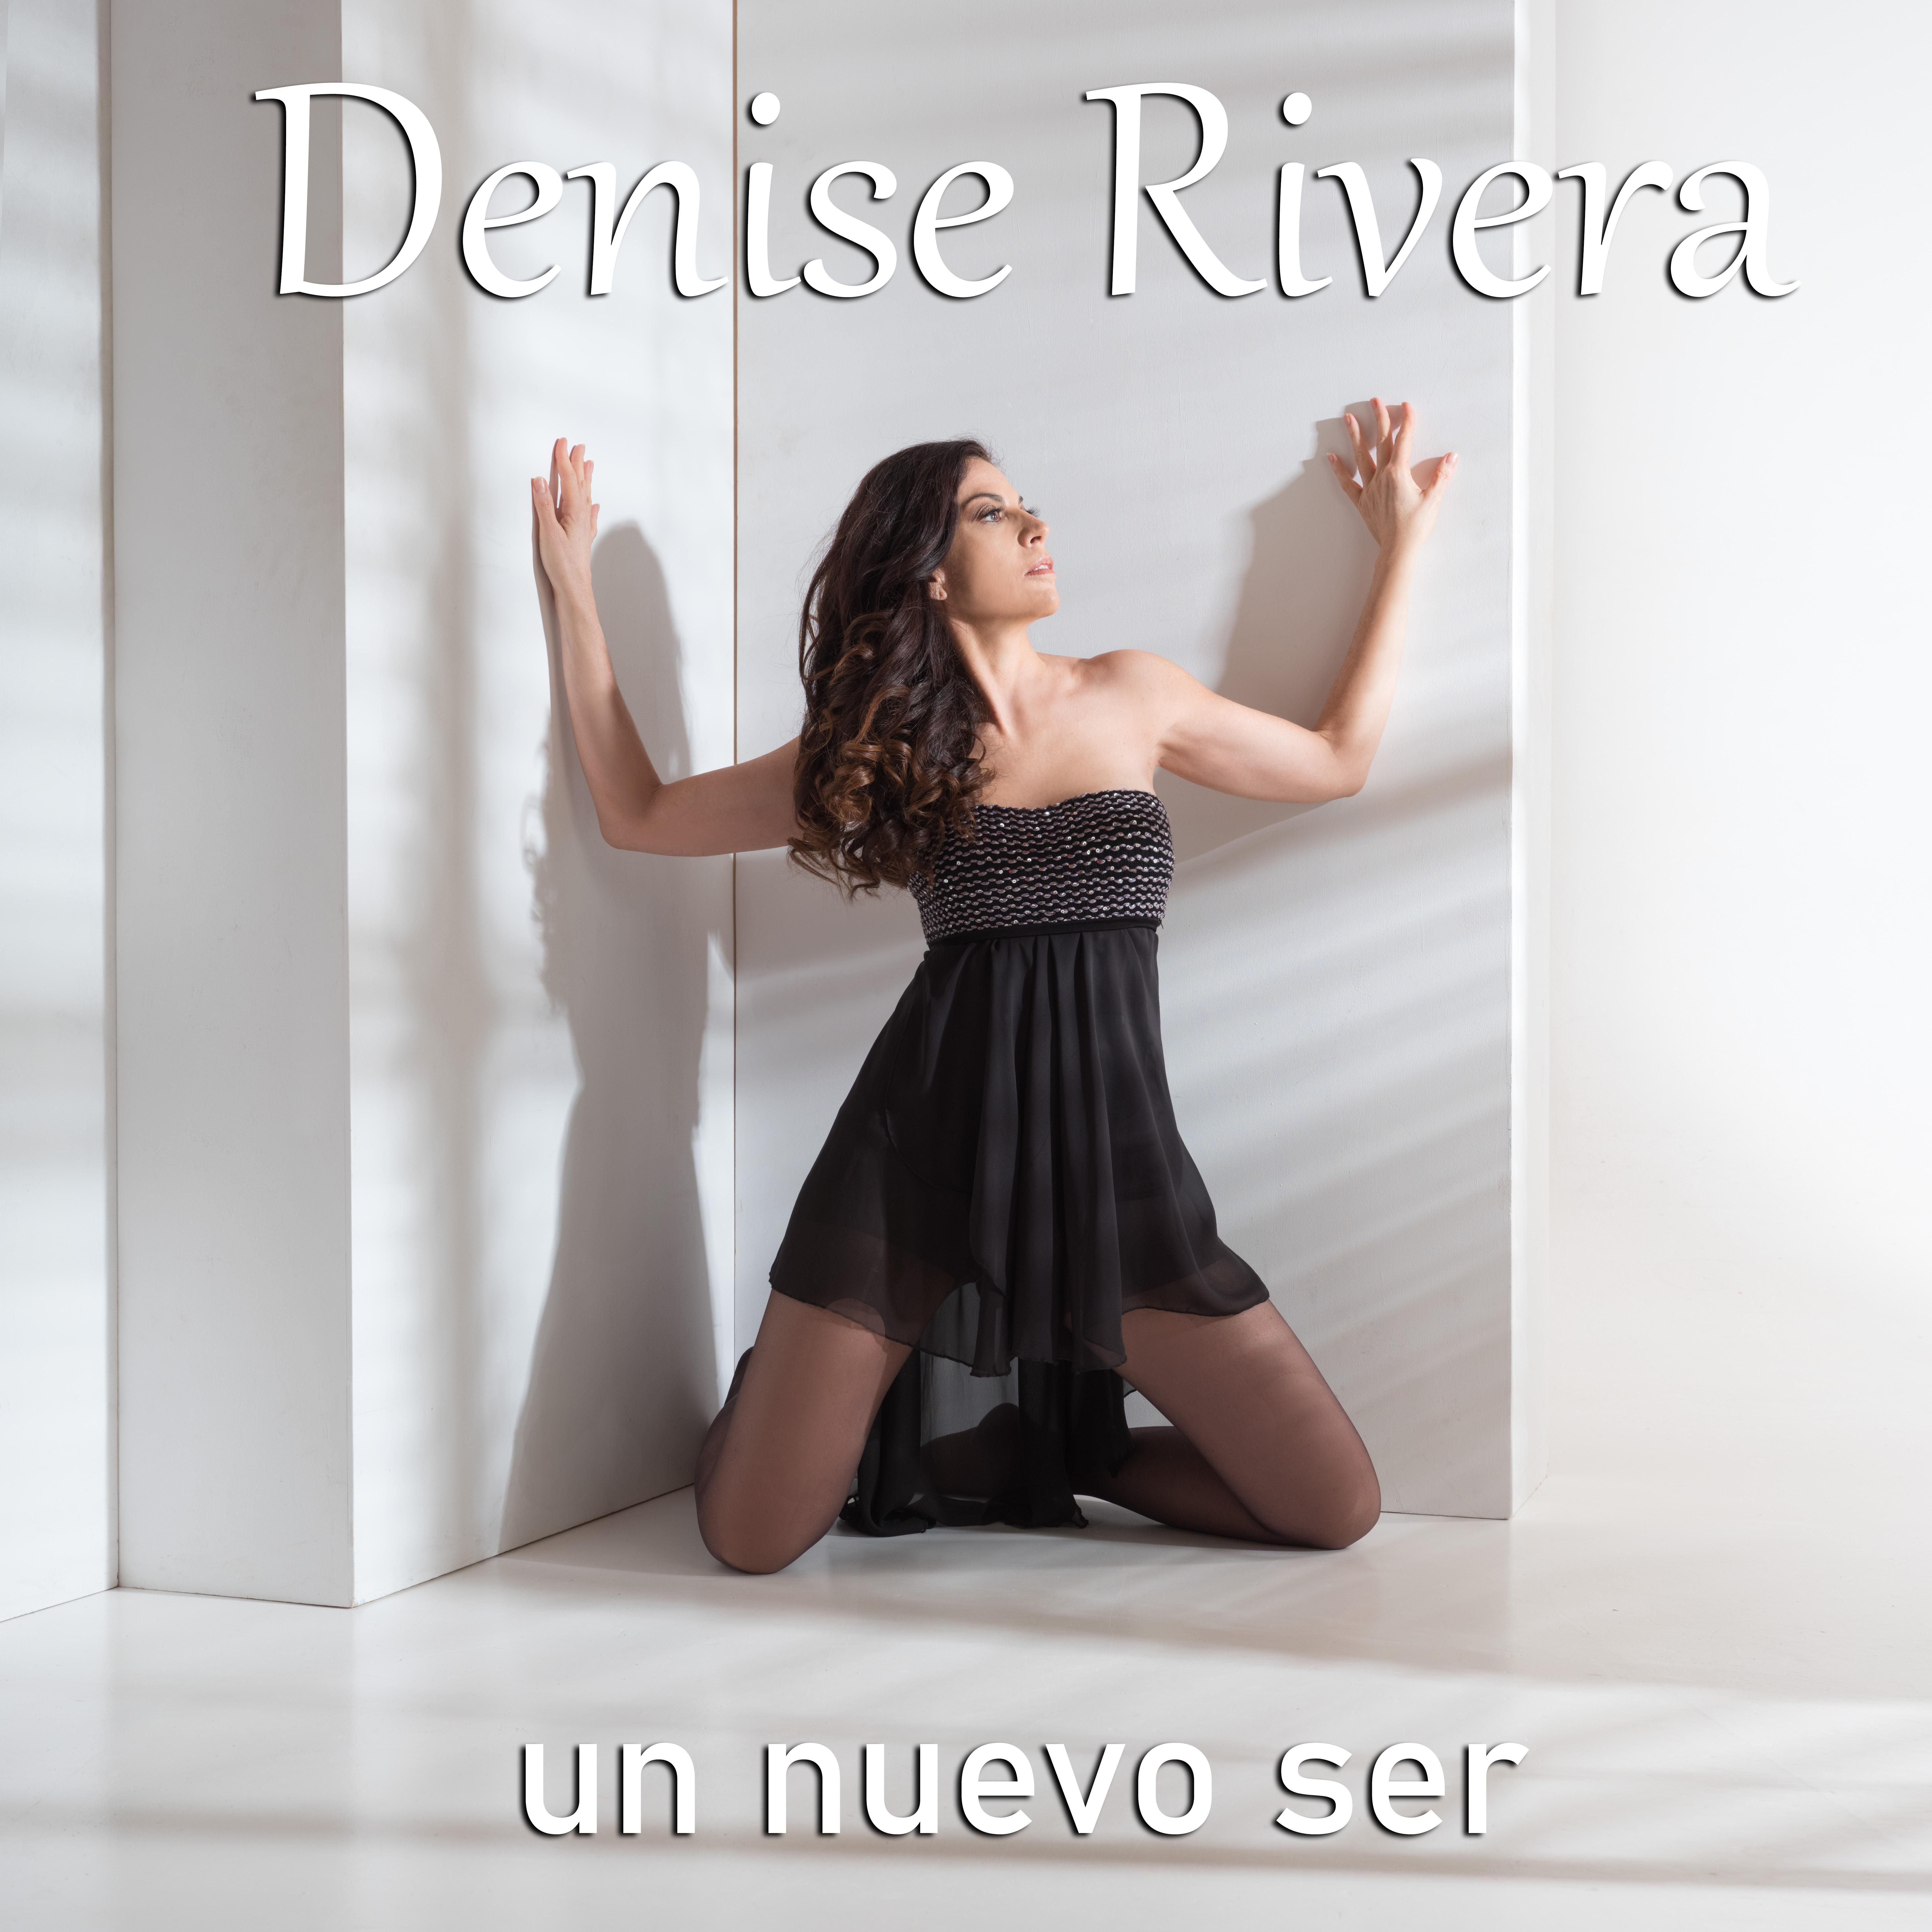 Denise Rivera - Si no hubiera mas dias que hoy